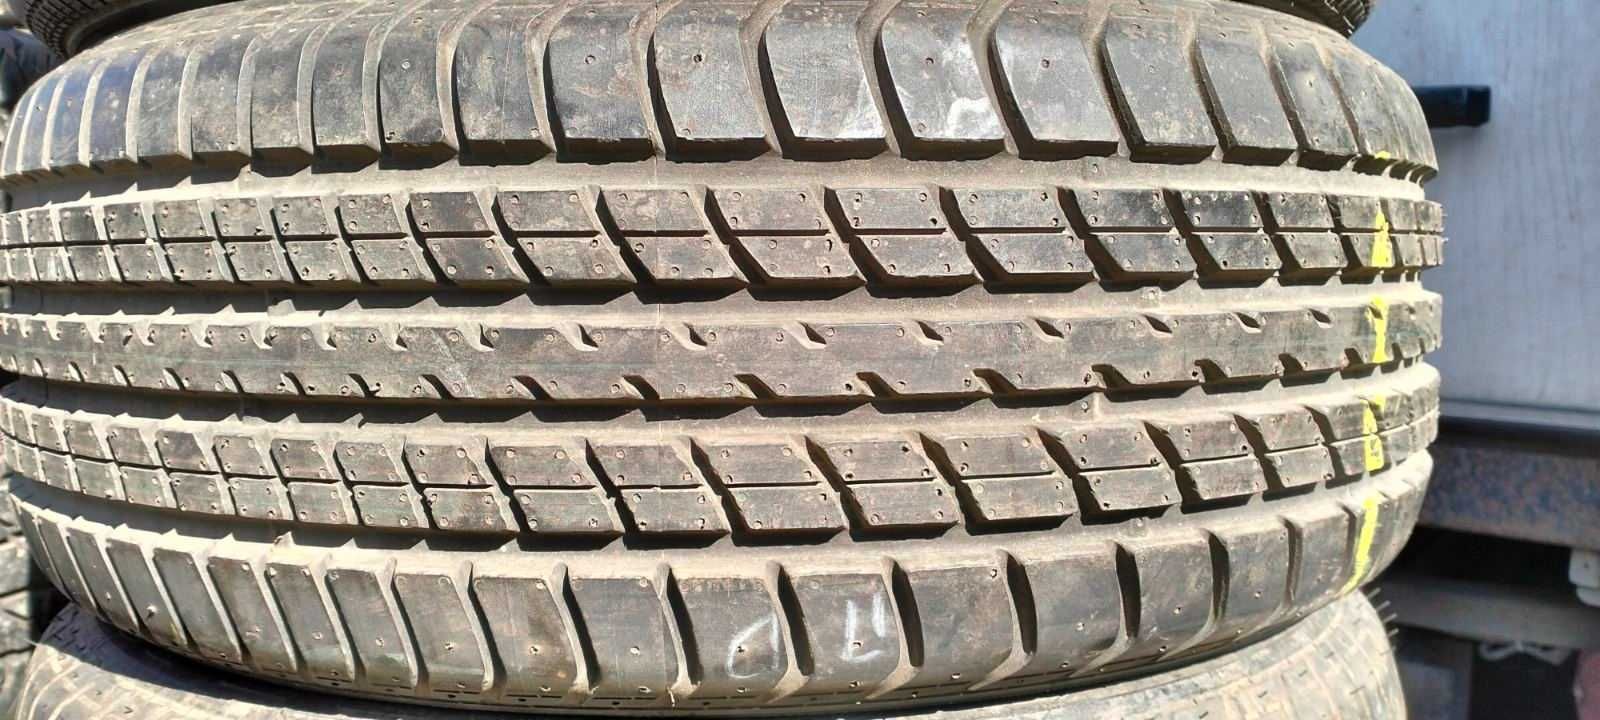 Dunlop-Bridgestone(ПАРИ) 215 55 r16 (Літо) шиномонтаж Дружківська 12